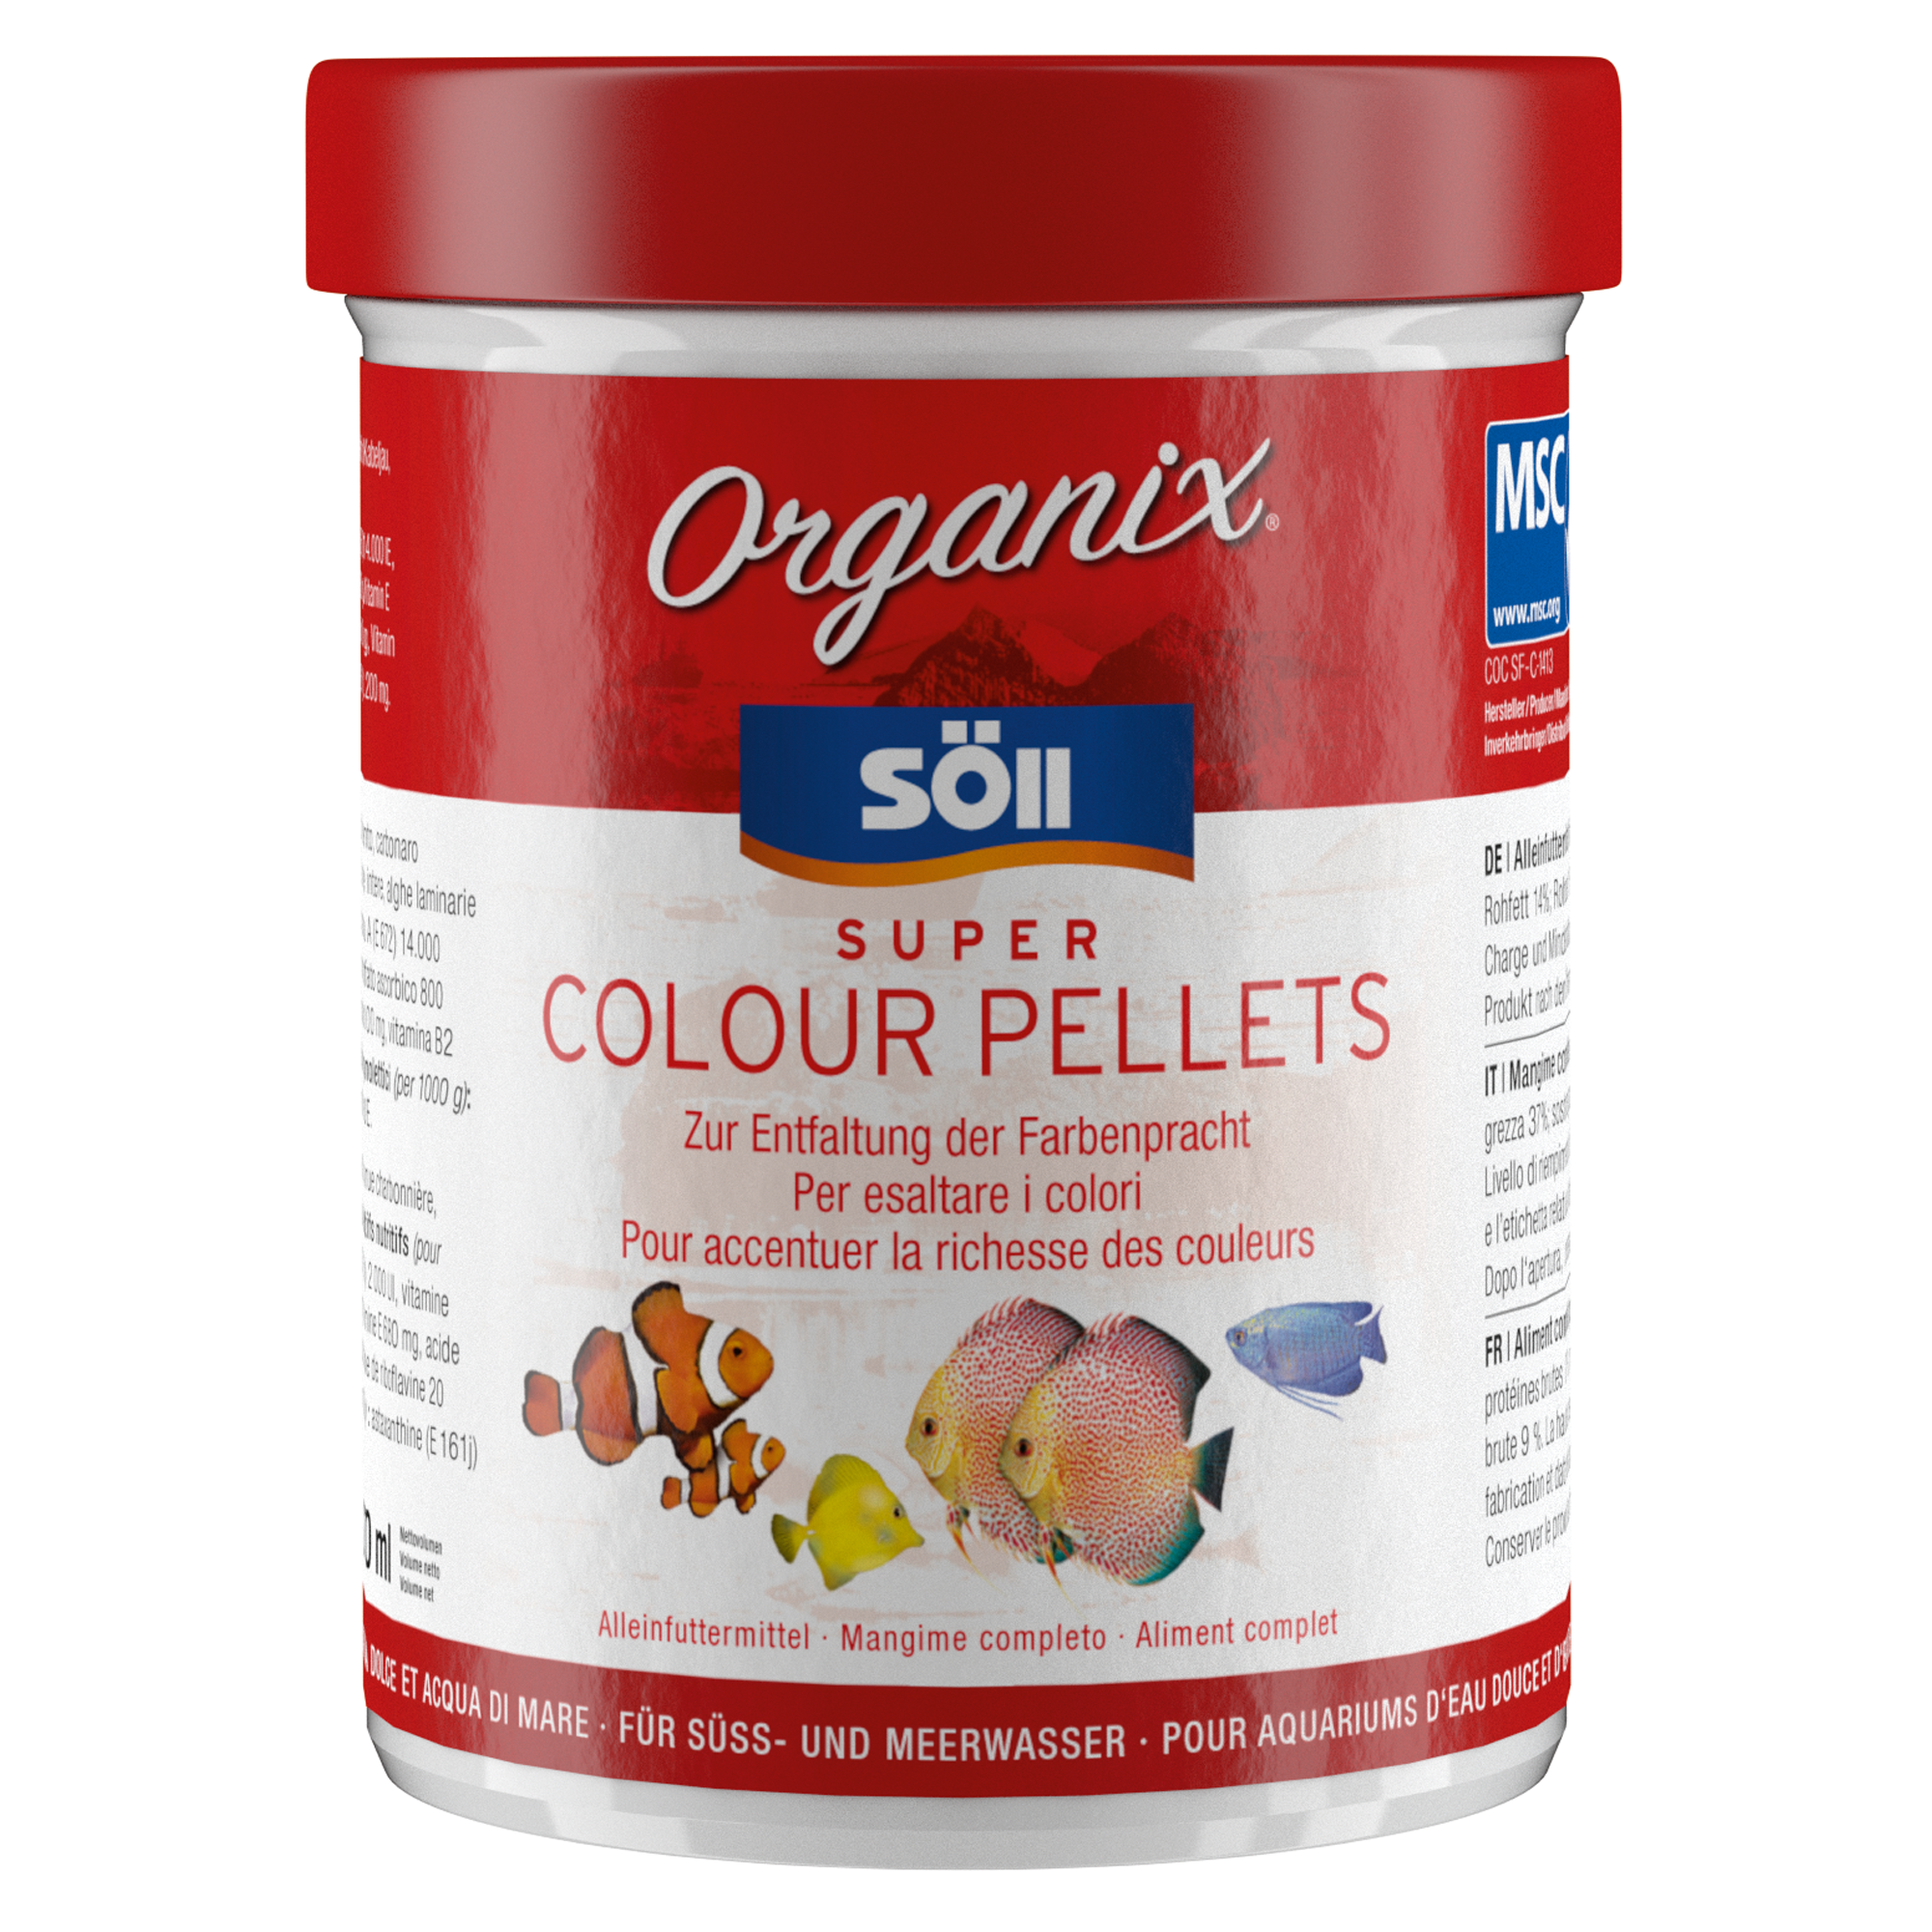 Organix Super Colour Pellets 270 ml + product picture